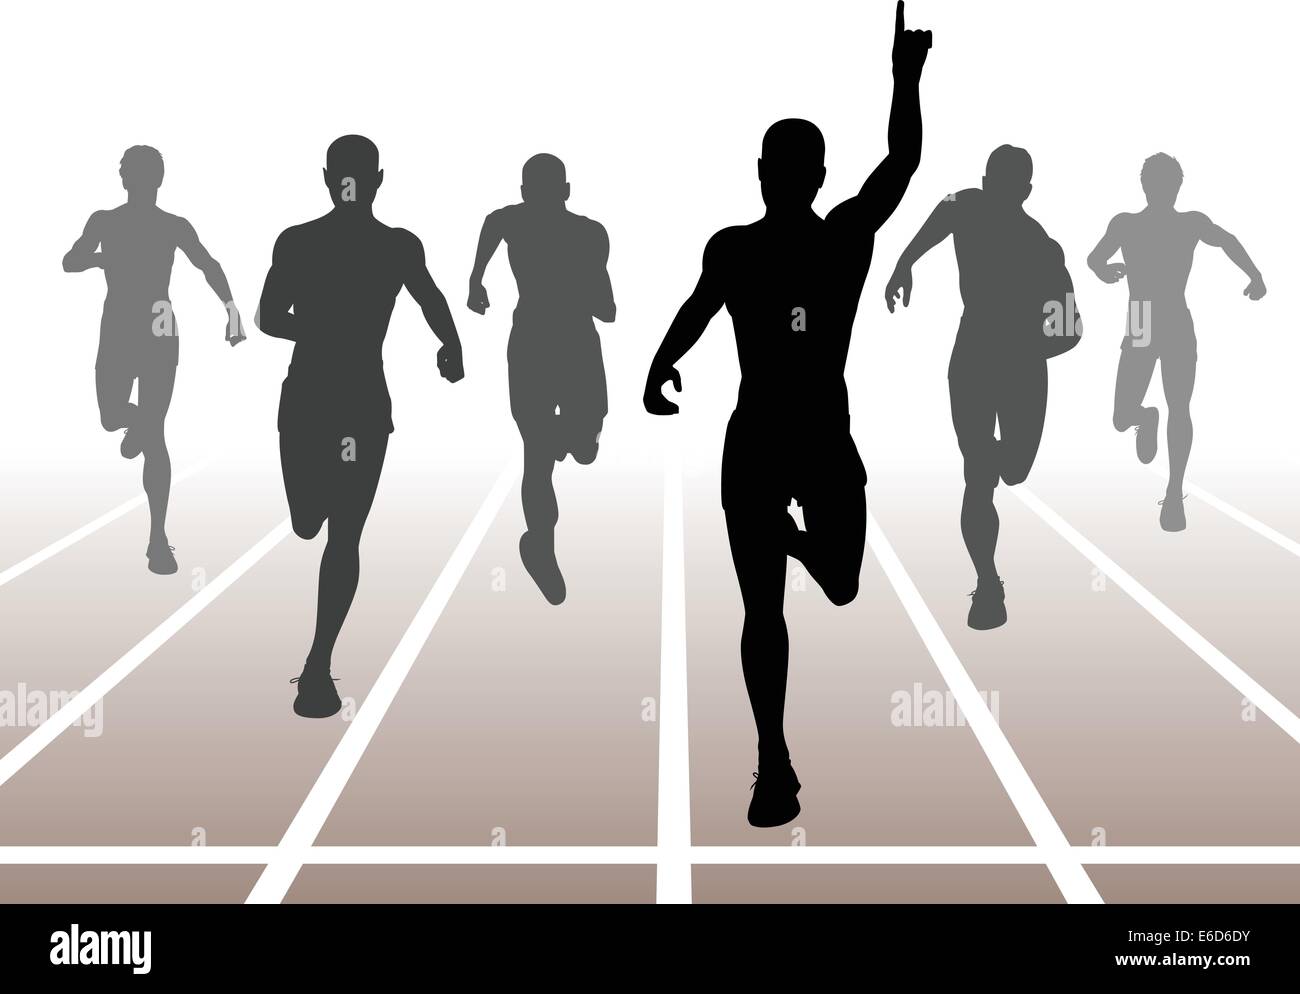 Bearbeitbares Vektor-Illustration von Männern ein Sprintrennen zu beenden Stock Vektor